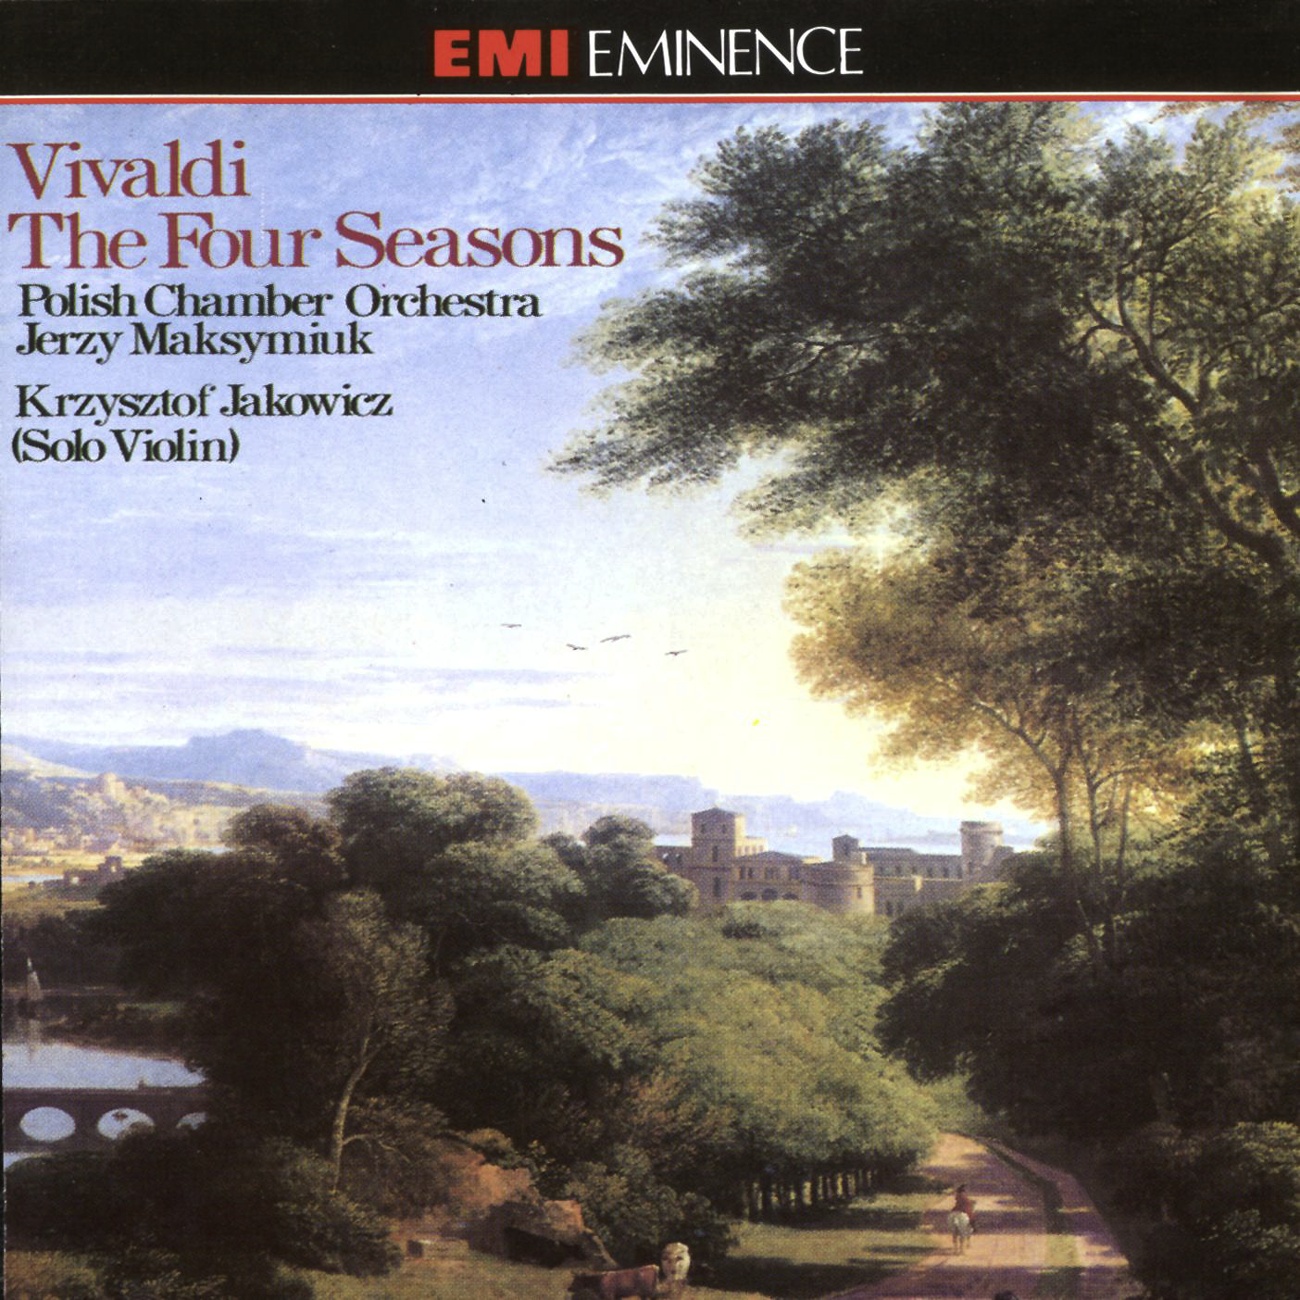 The Four Seasons Op. 8 Nos. 1-4 (1990 Digital Remaster), Concerto No. 1 in E (La primavera/ Spring) RV269 (Op. 8 No. 1): II.  La